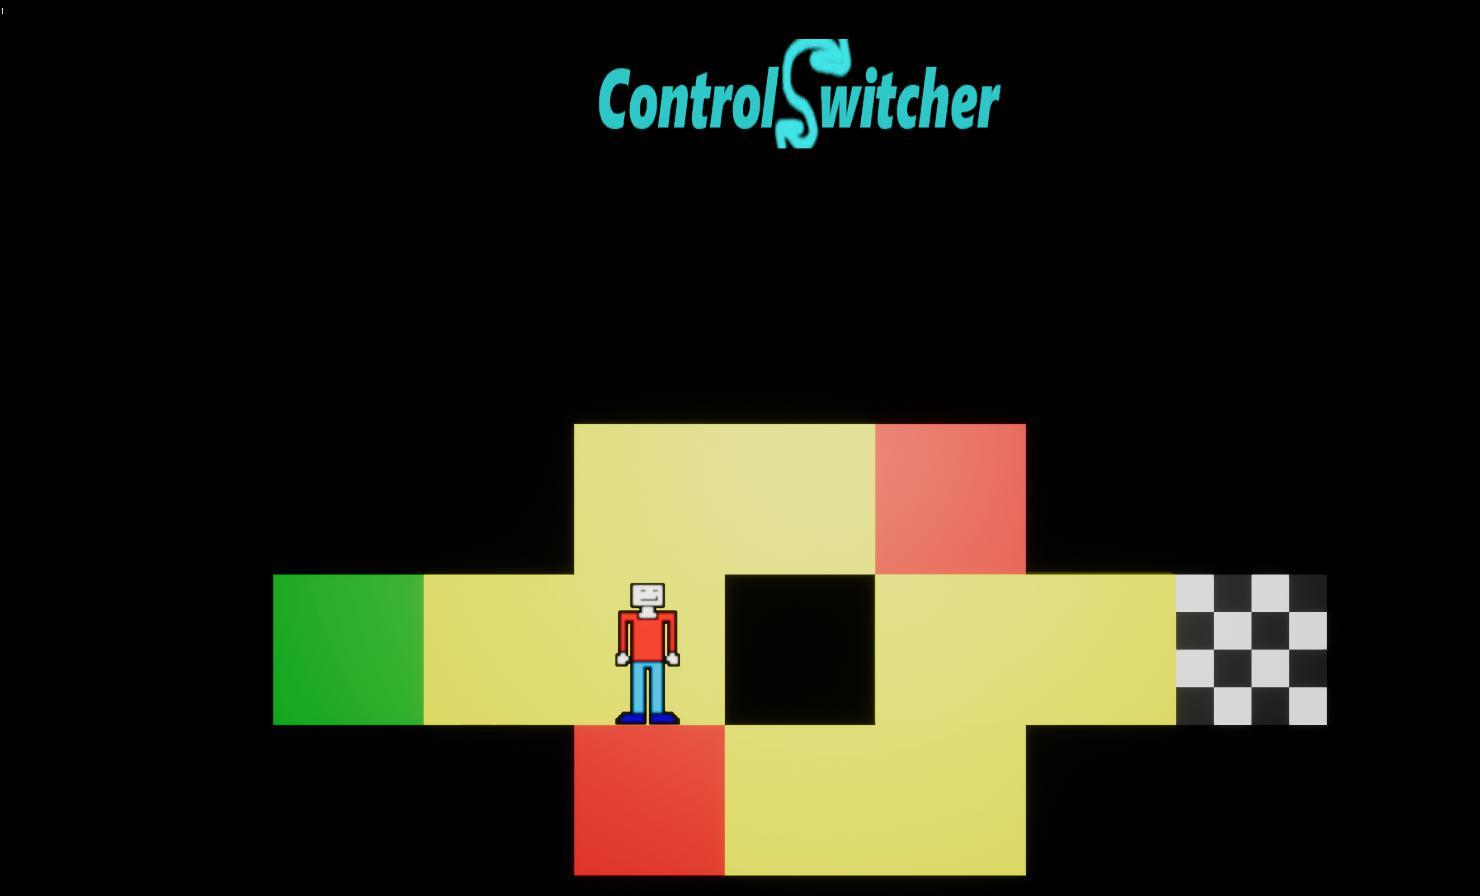 I like control. Switcher itch.